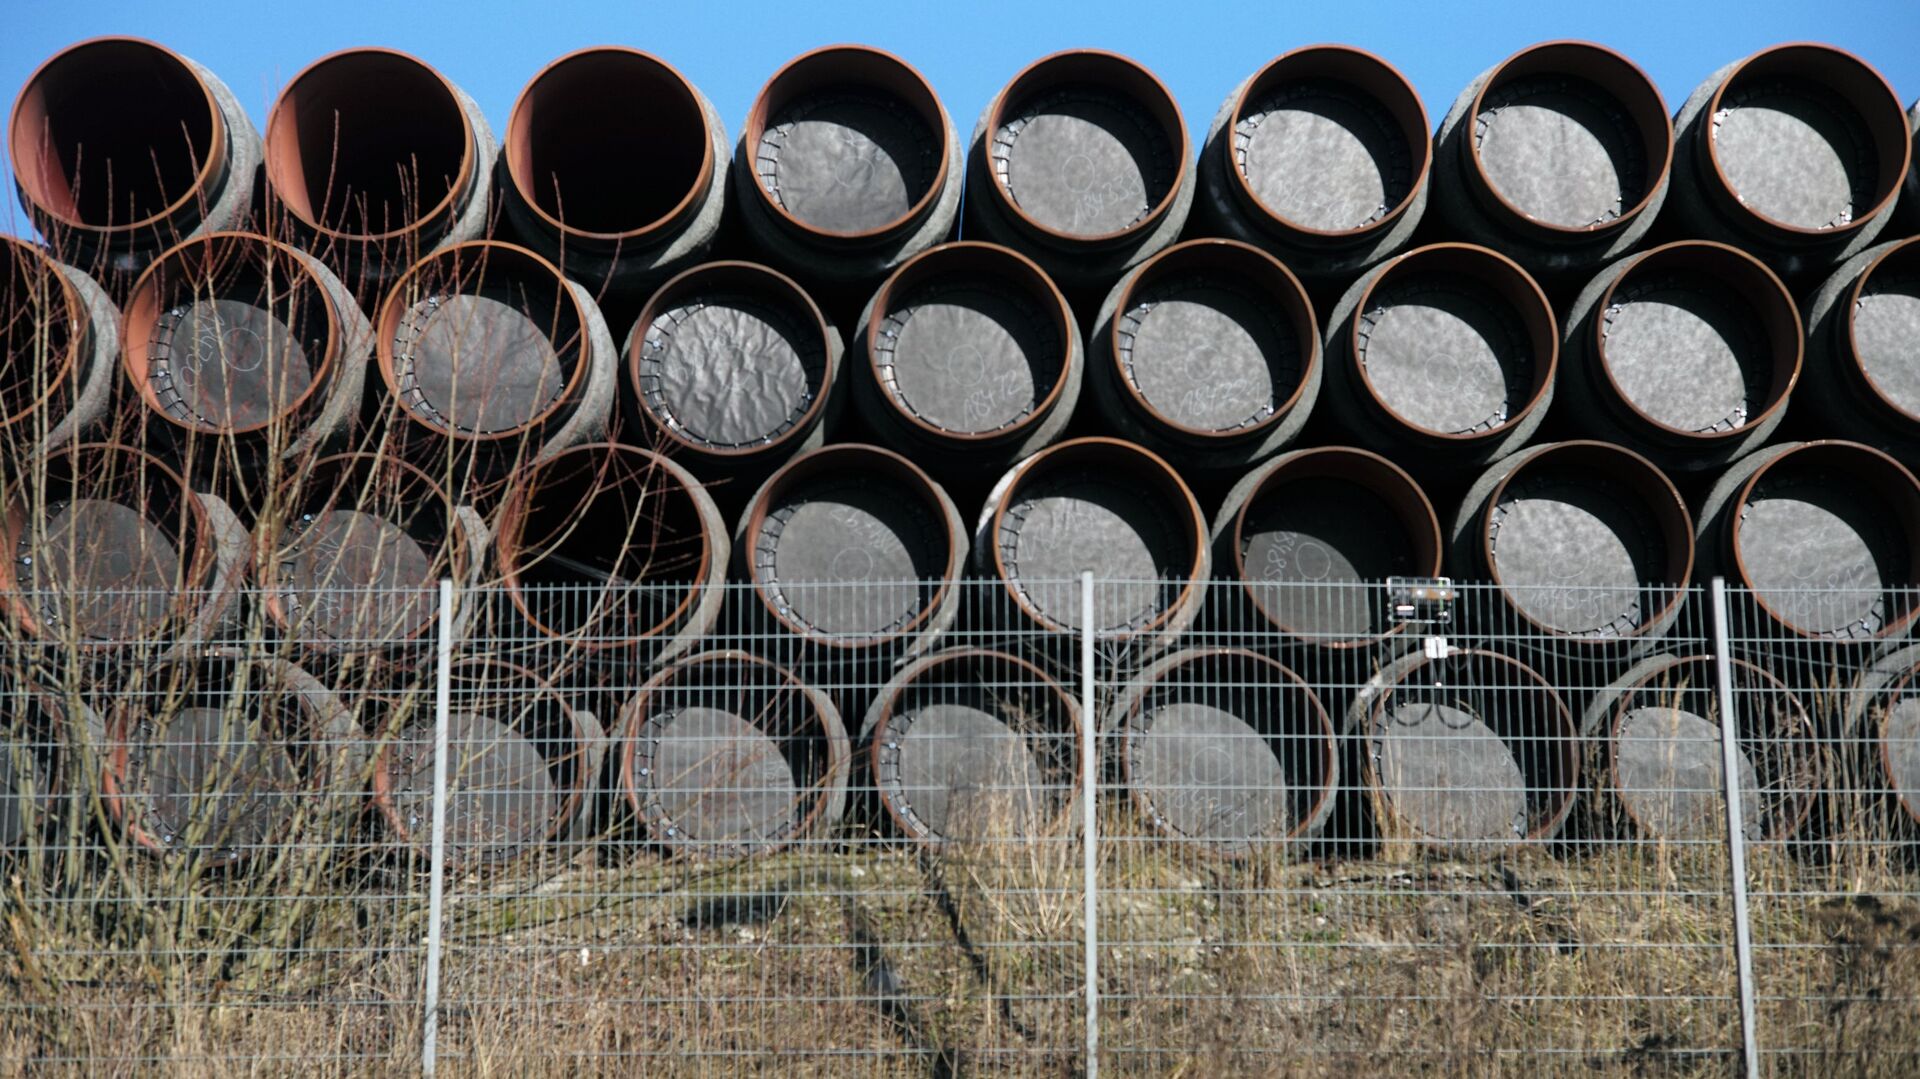 Склад труб для строительства газопровода Северный поток - 2 в порту города Засниц в Германии - Sputnik Latvija, 1920, 30.08.2021